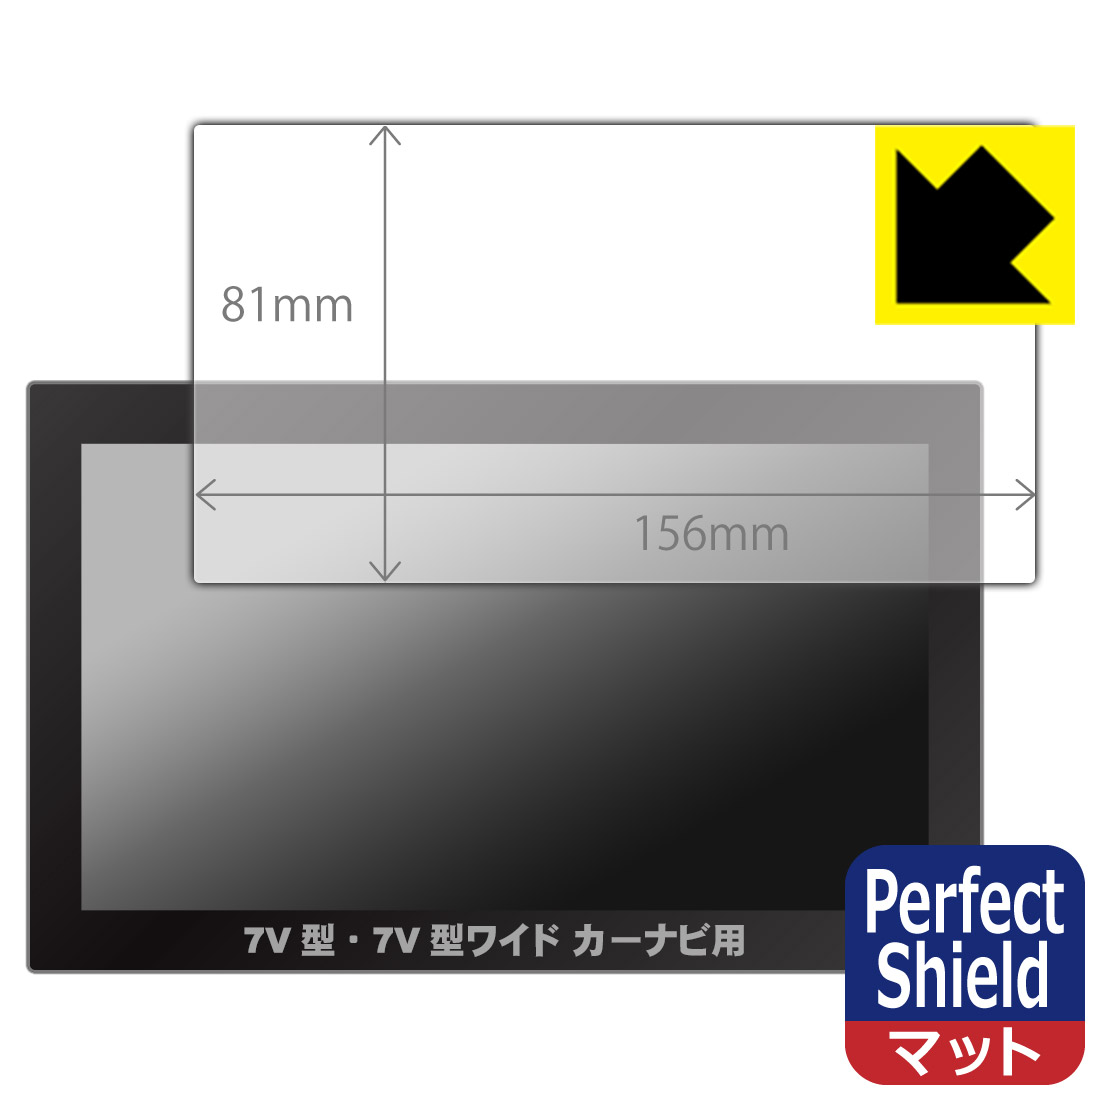 Perfect Shield J[irp y7V^E7V^Chpz(tBTCY 156mm~81mm) { А